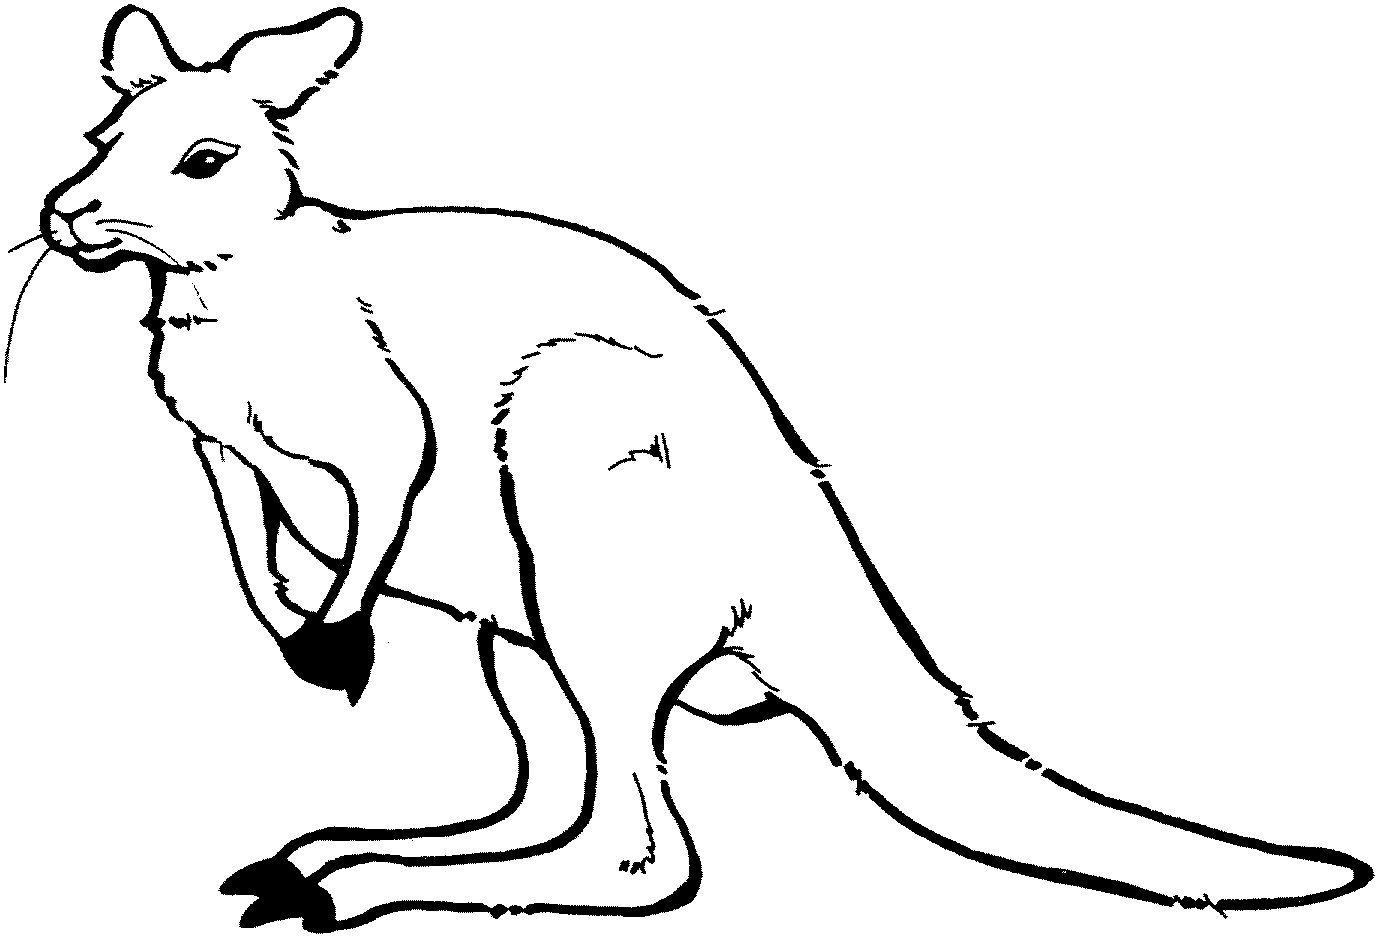 Dessin dessin gratuit de kangourou a imprimer et colorier